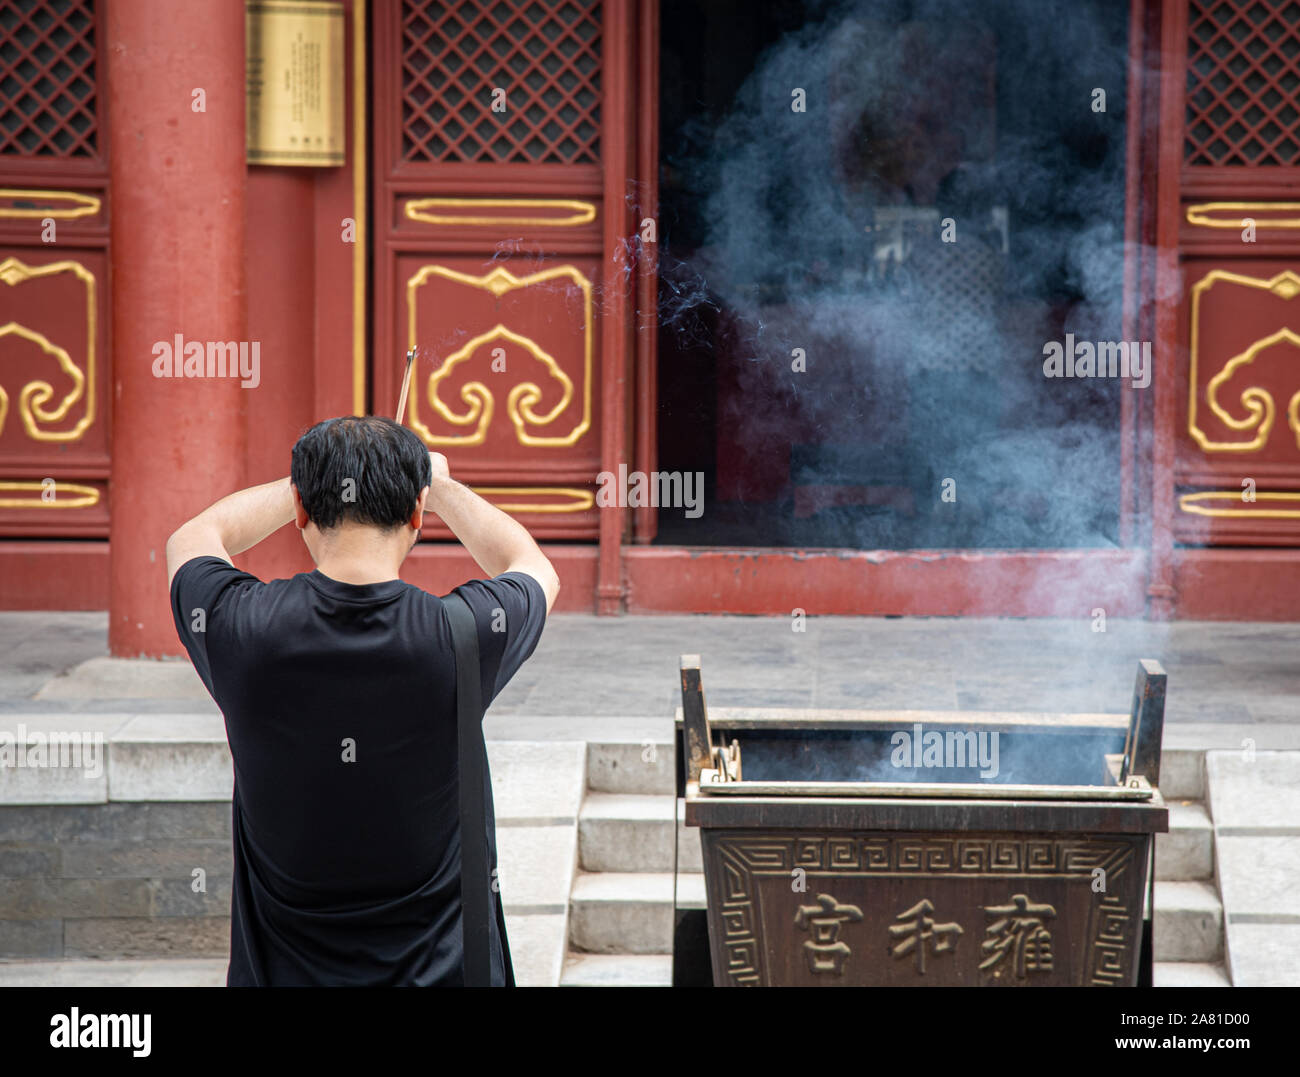 Beijing, Chine, le 8 juin 2018 : l'homme religieux non reconnus priant au temple du Lama qui est le plus grand temple bouddhiste tibétain de Beijing, Chine Banque D'Images